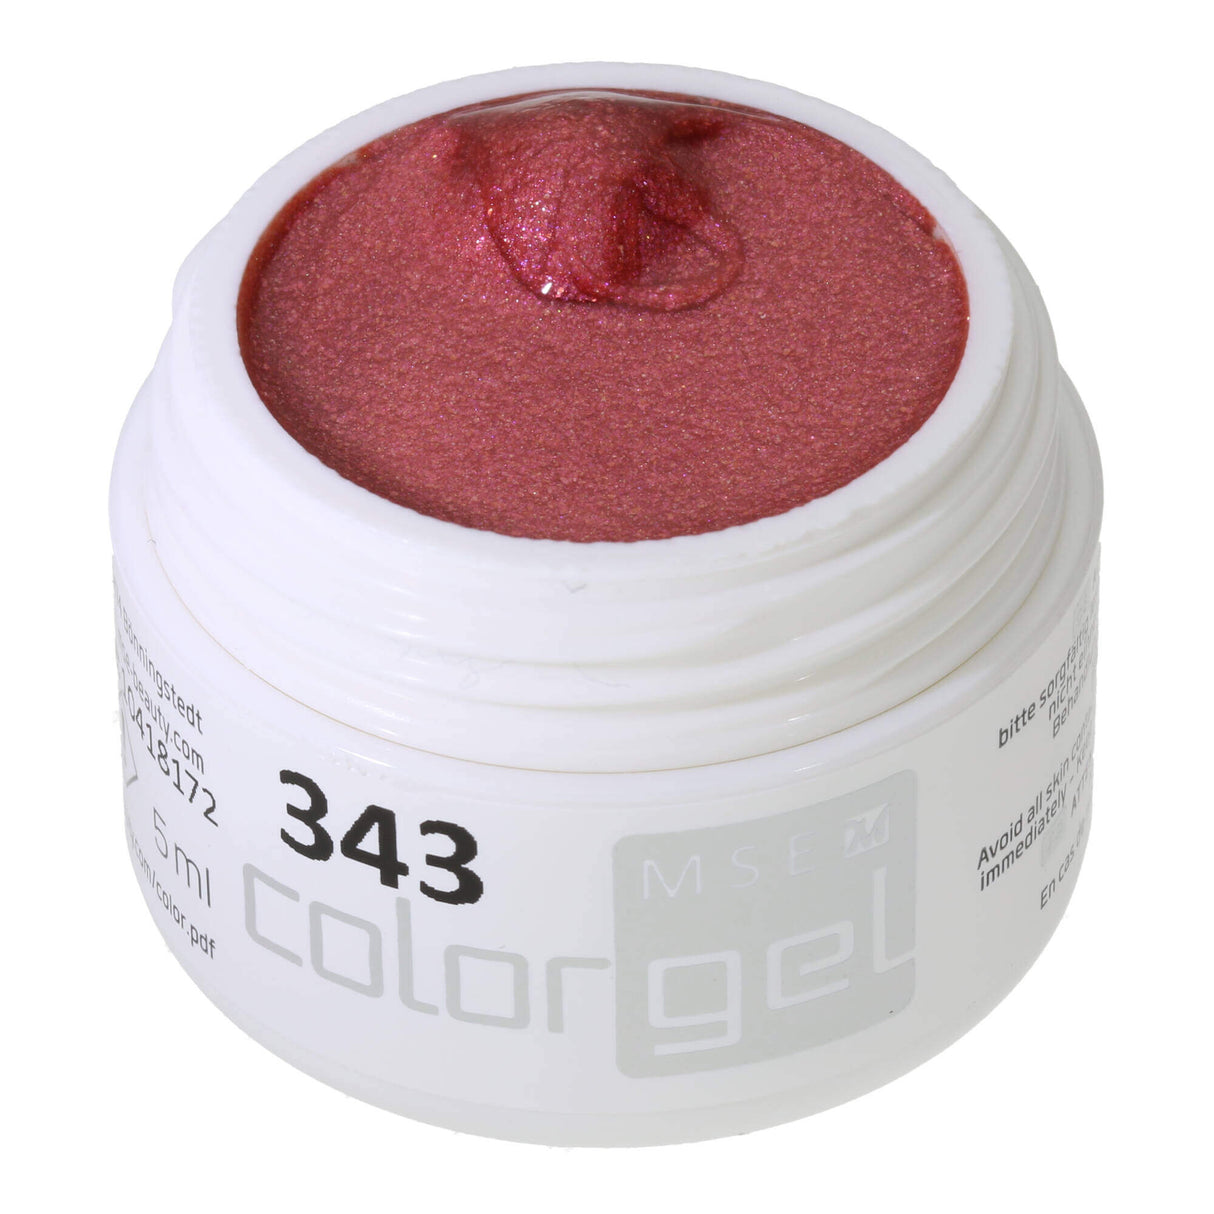 Gel tạo màu # 343 Premium-EFFEKT 5ml Màu hồng-đỏ đậm với ánh sáng lấp lánh ánh hồng-vàng